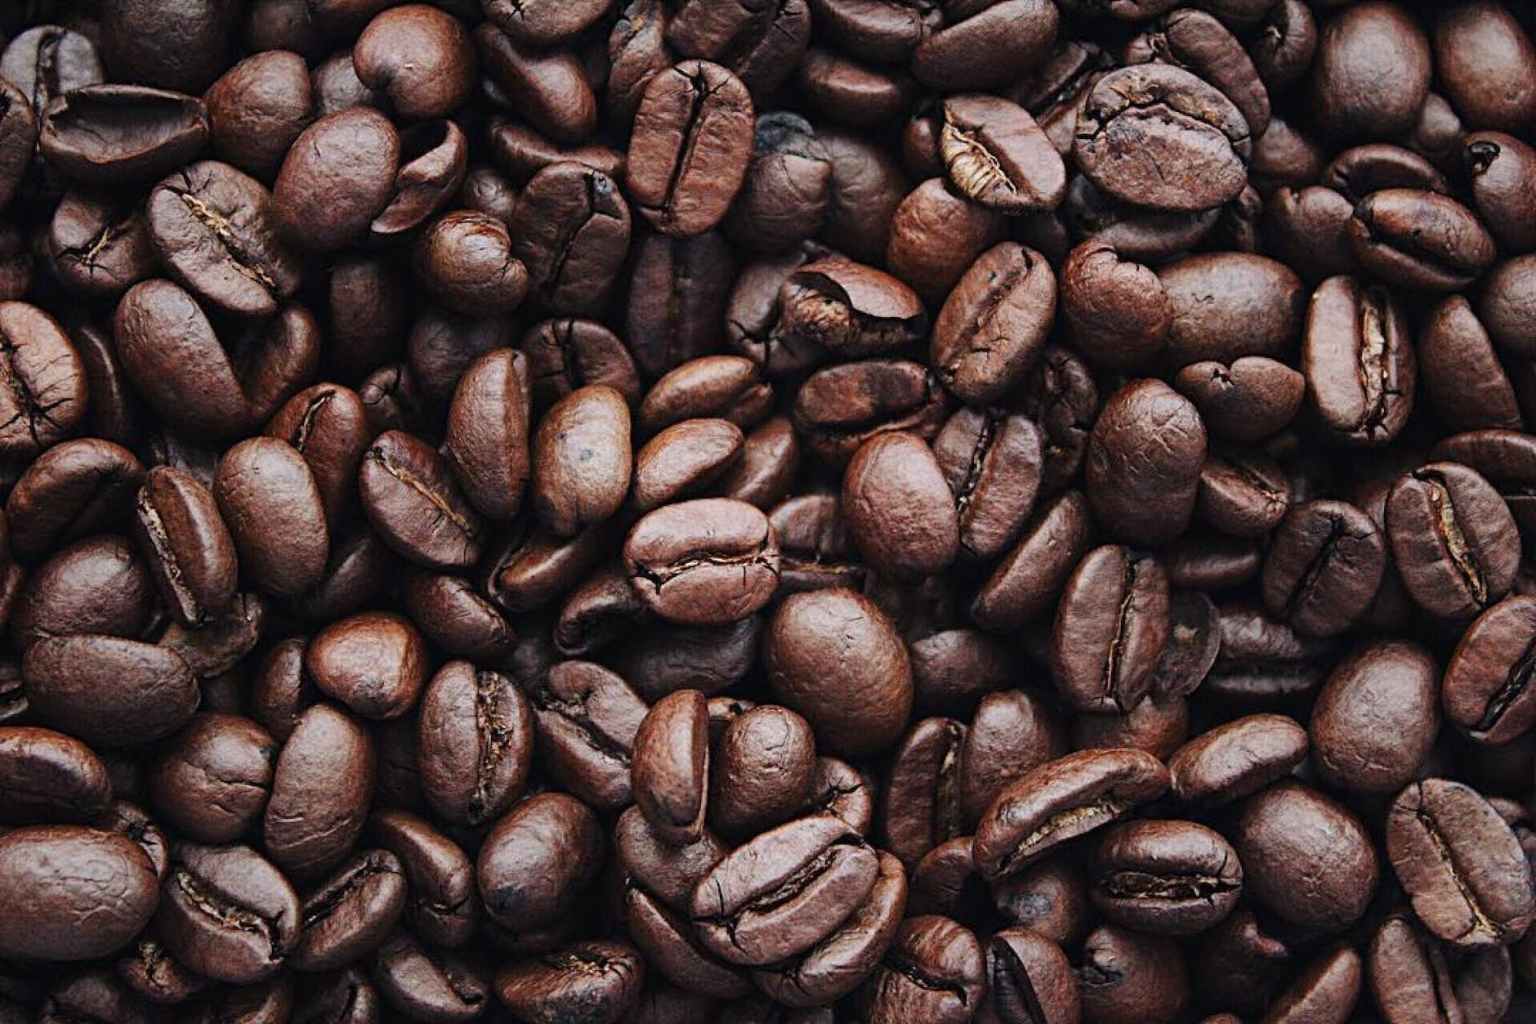 适合意式浓缩 Espresso 和拿铁、卡布奇诺的咖啡豆推荐